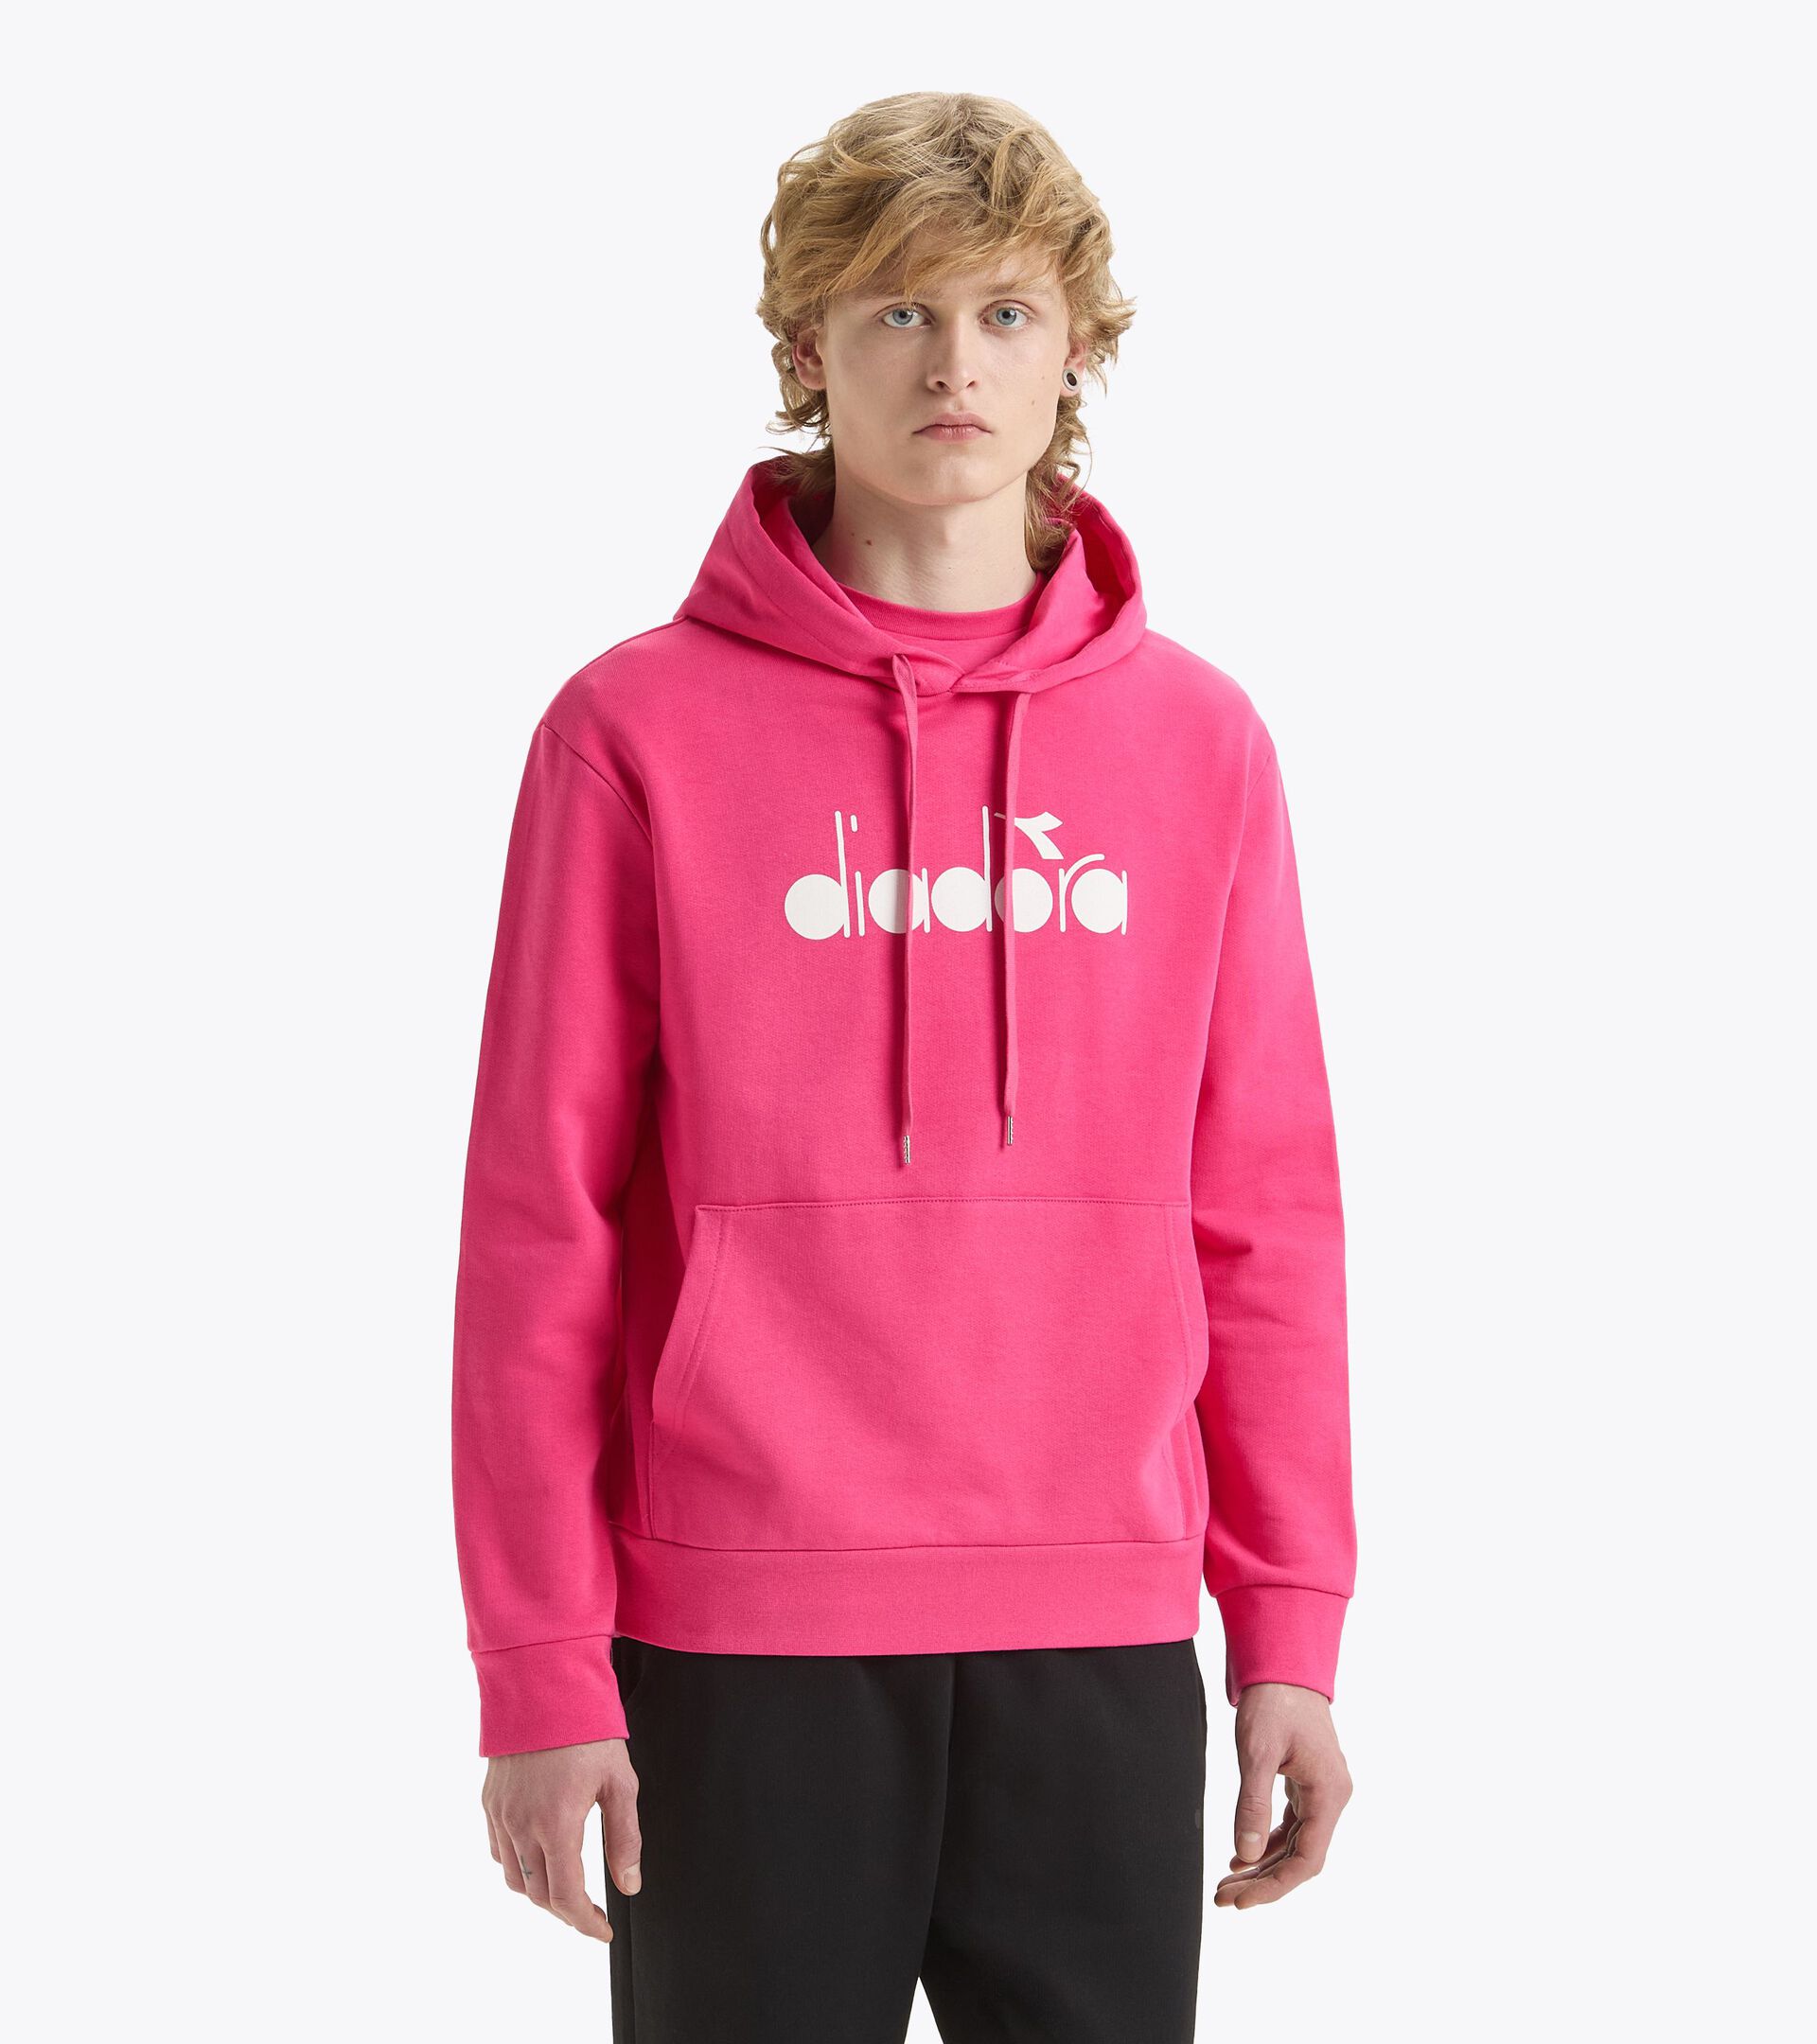 Sporty hoodie - Made in Italy - Gender Neutral HOODIE LOGO PINK SORBET - Diadora